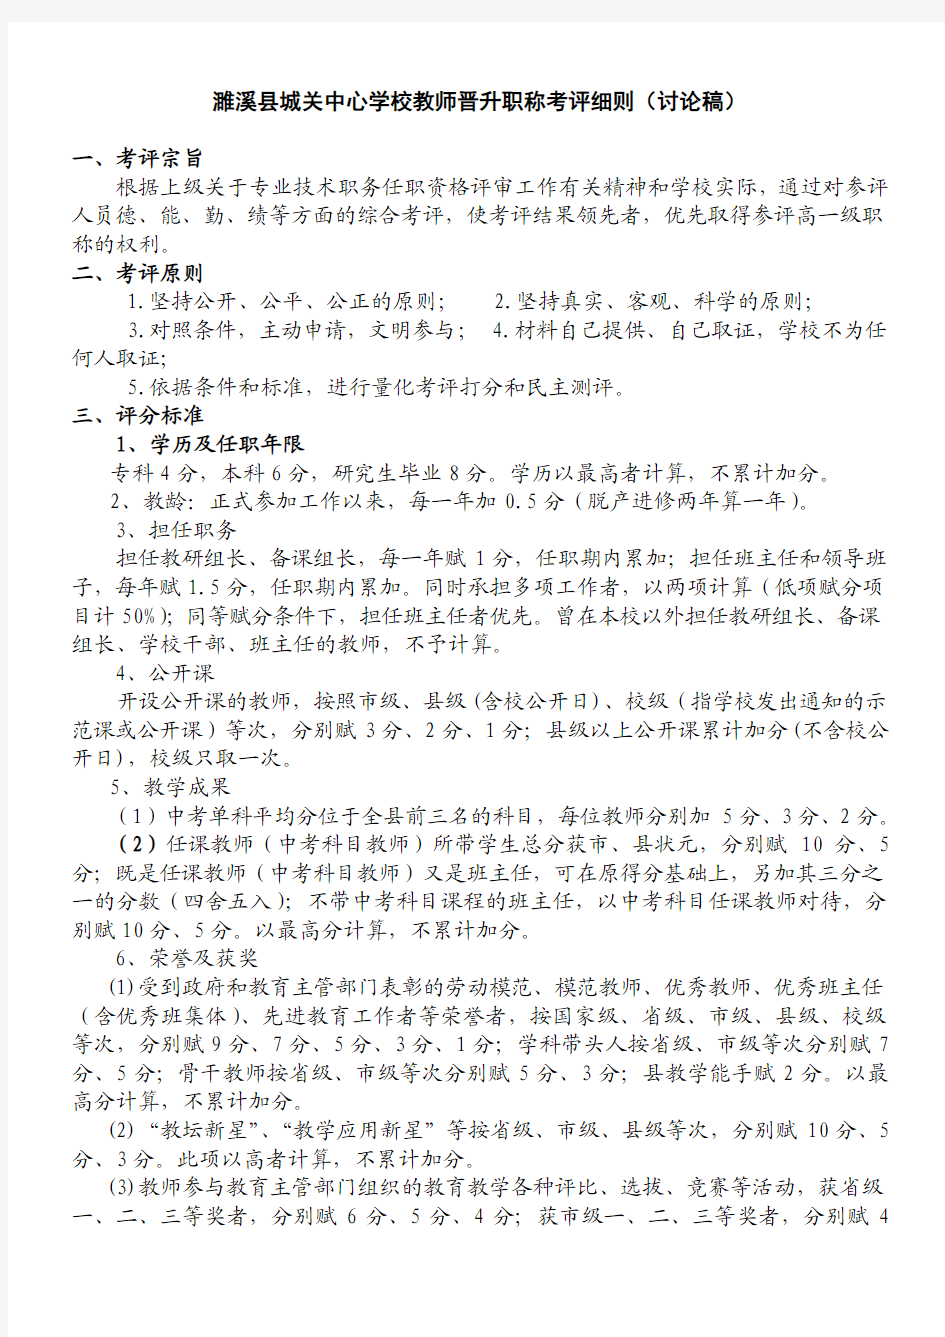 濉溪县城关中心学校教师晋升职称考评细则